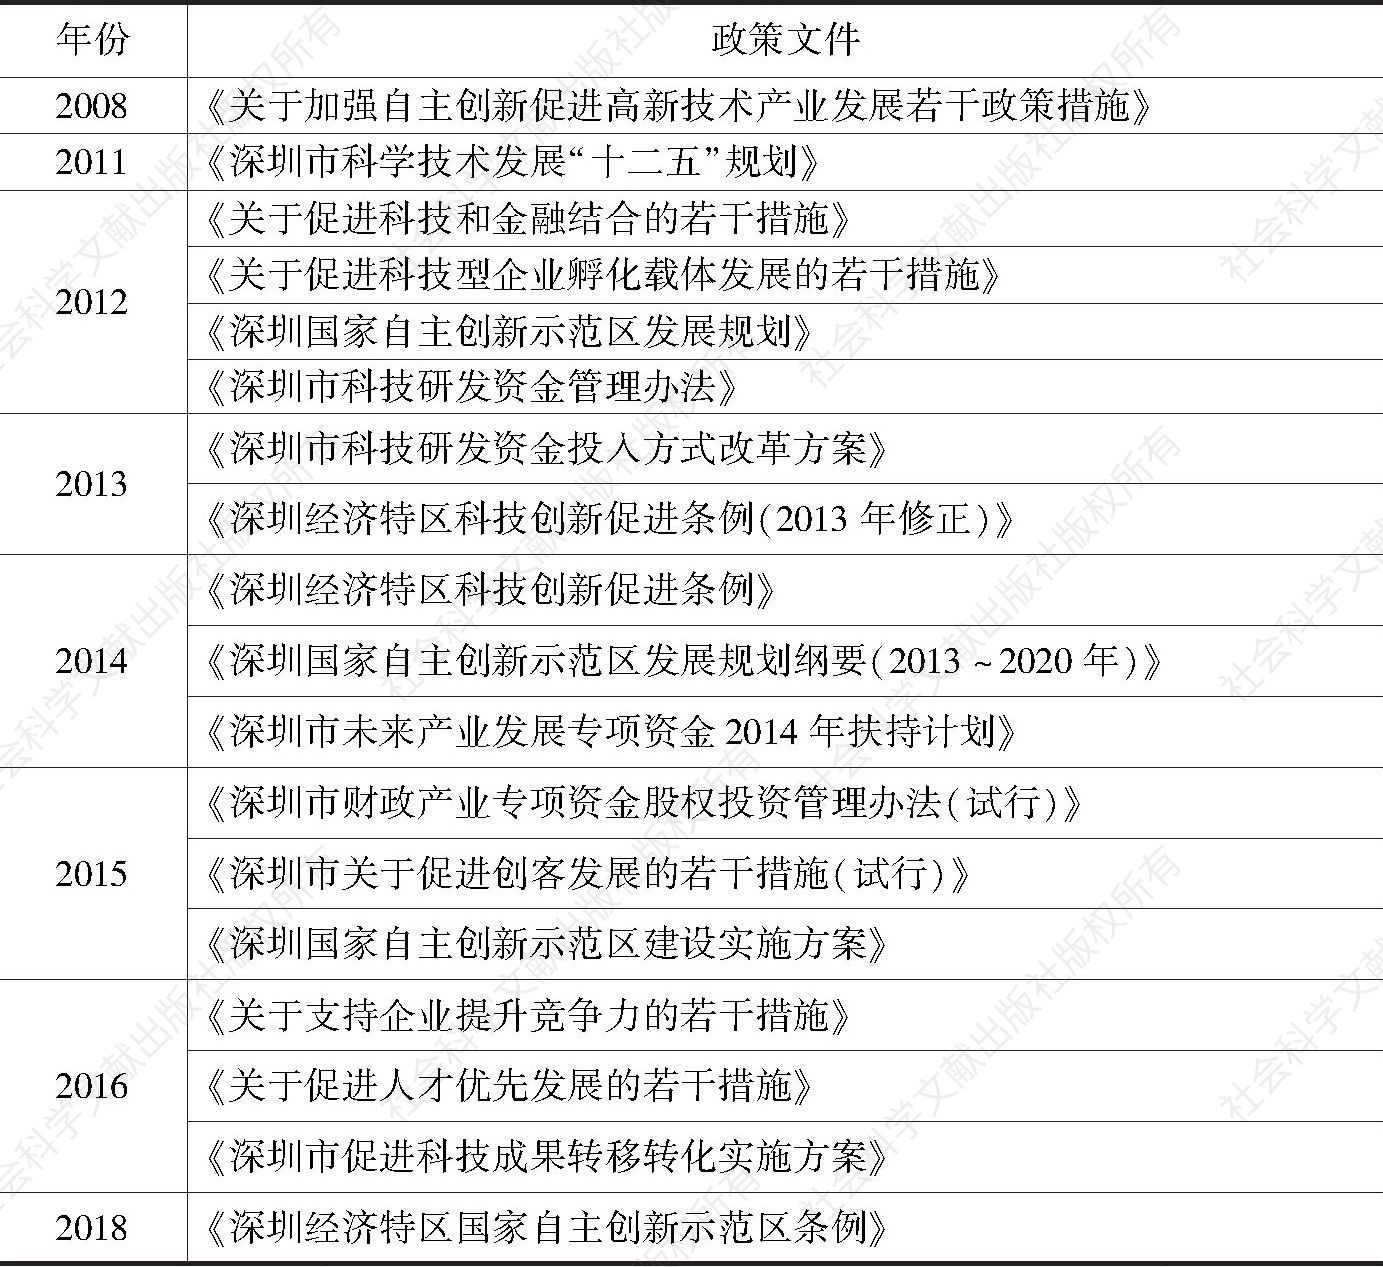 表1 历年深圳市科技金融相关政策措施